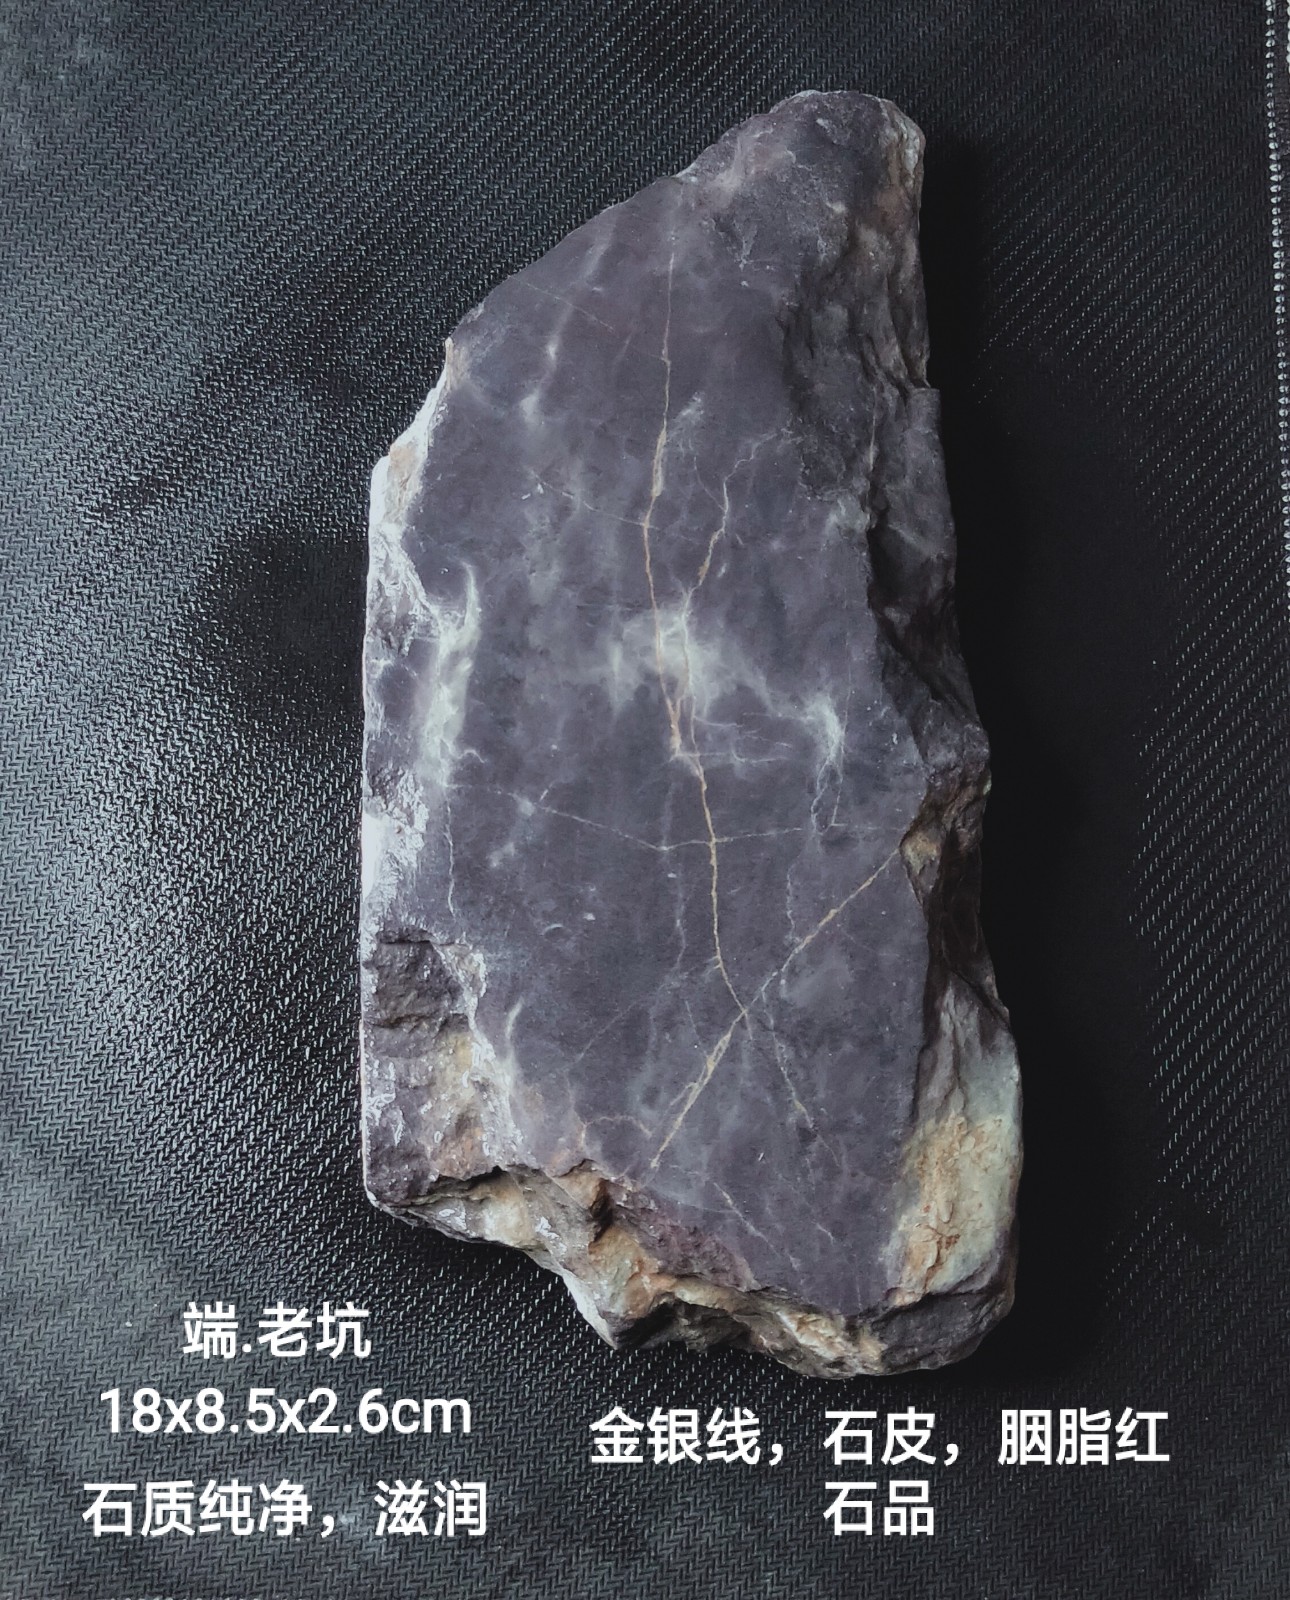 端砚老坑大西洞老坑原石纯肉料三大名坑藏品端砚老坑原石石料- Taobao